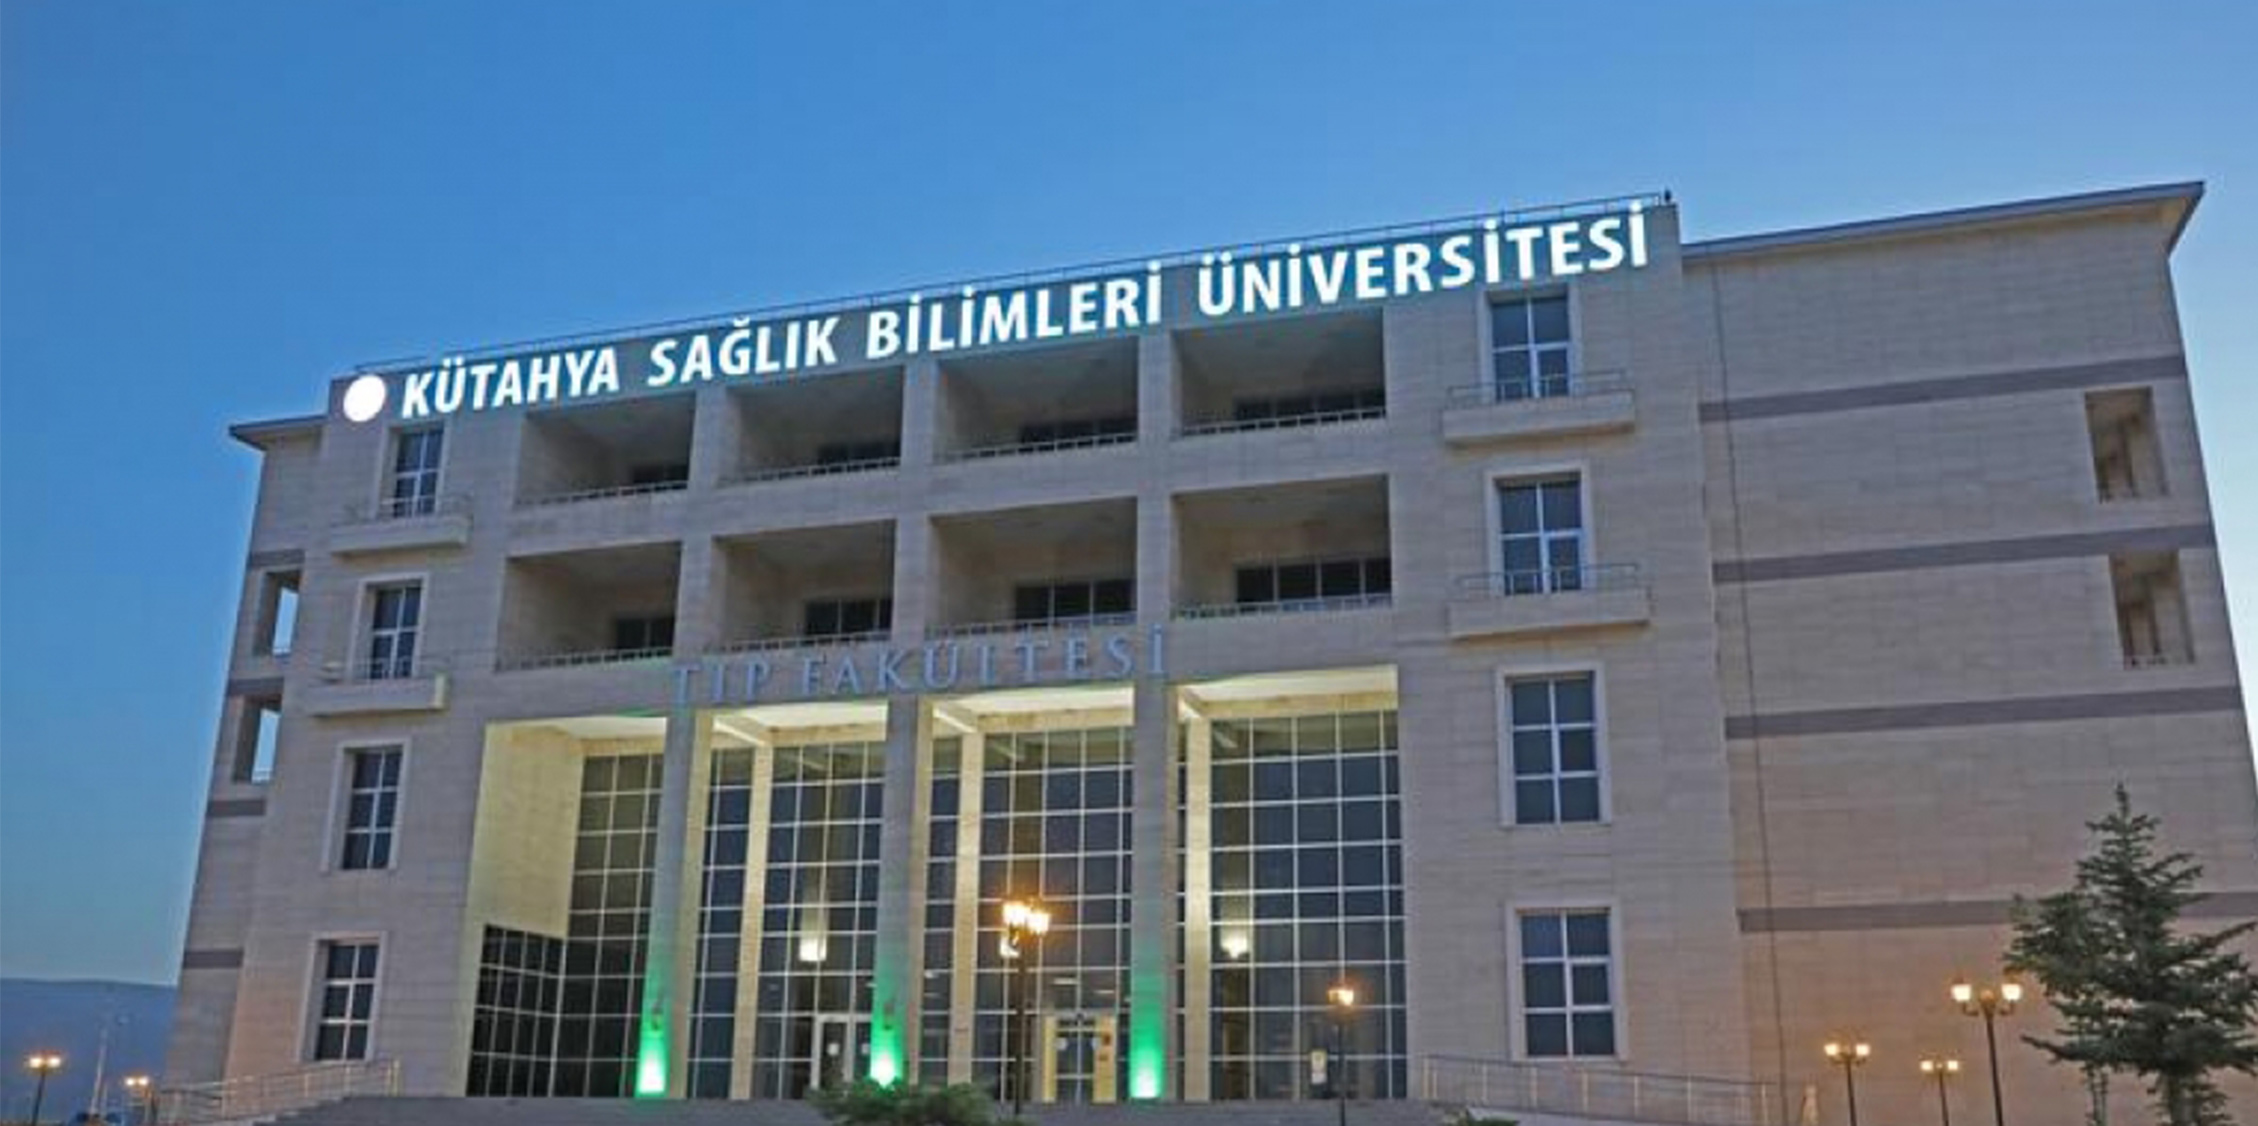 kutahyasaglik universitesi find and study 1 - Université des sciences de la santé de Kütahya